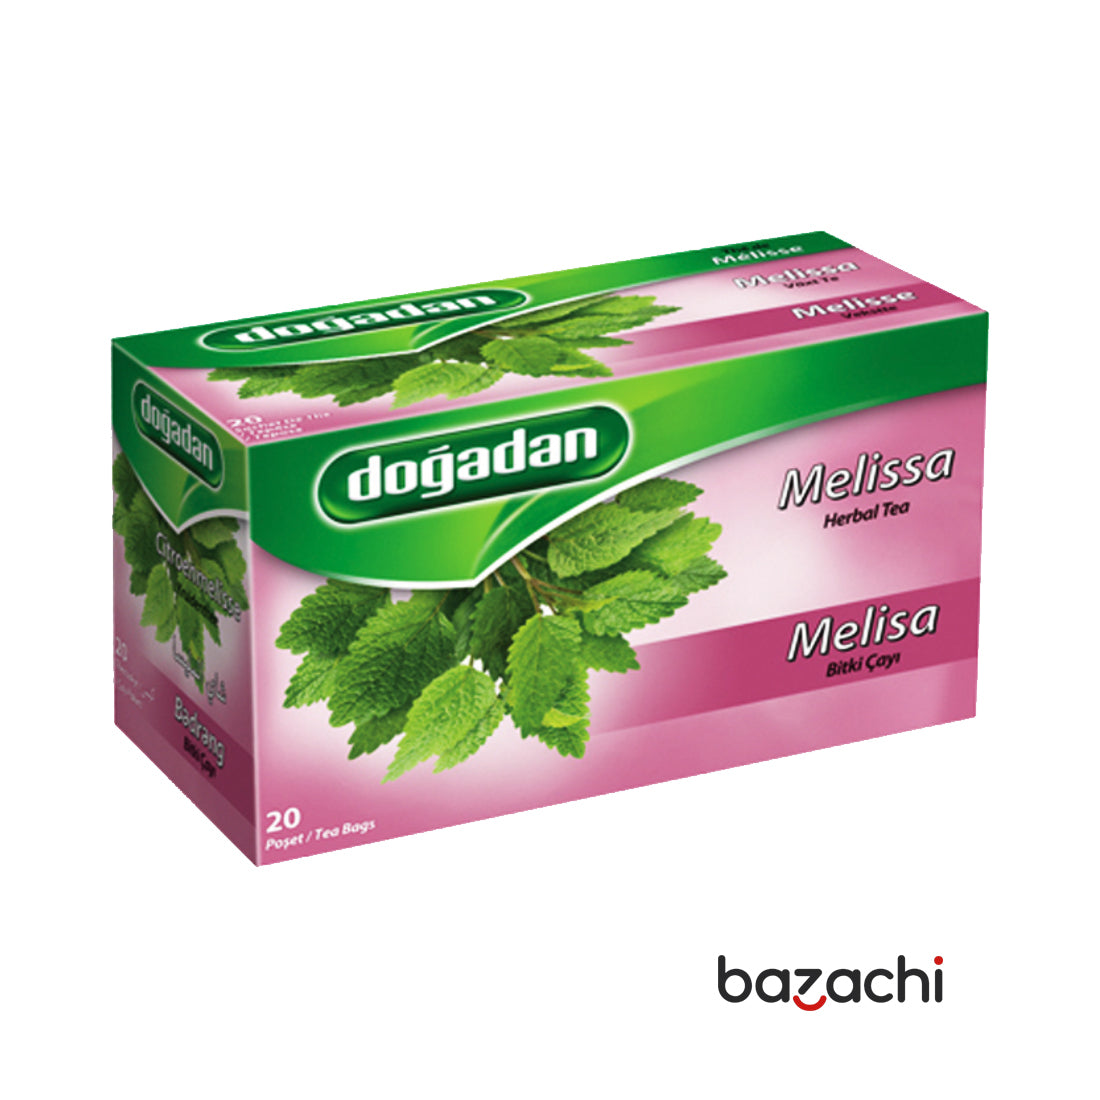 Dogadan Melisse Herbal Tea 20 Tea Bags